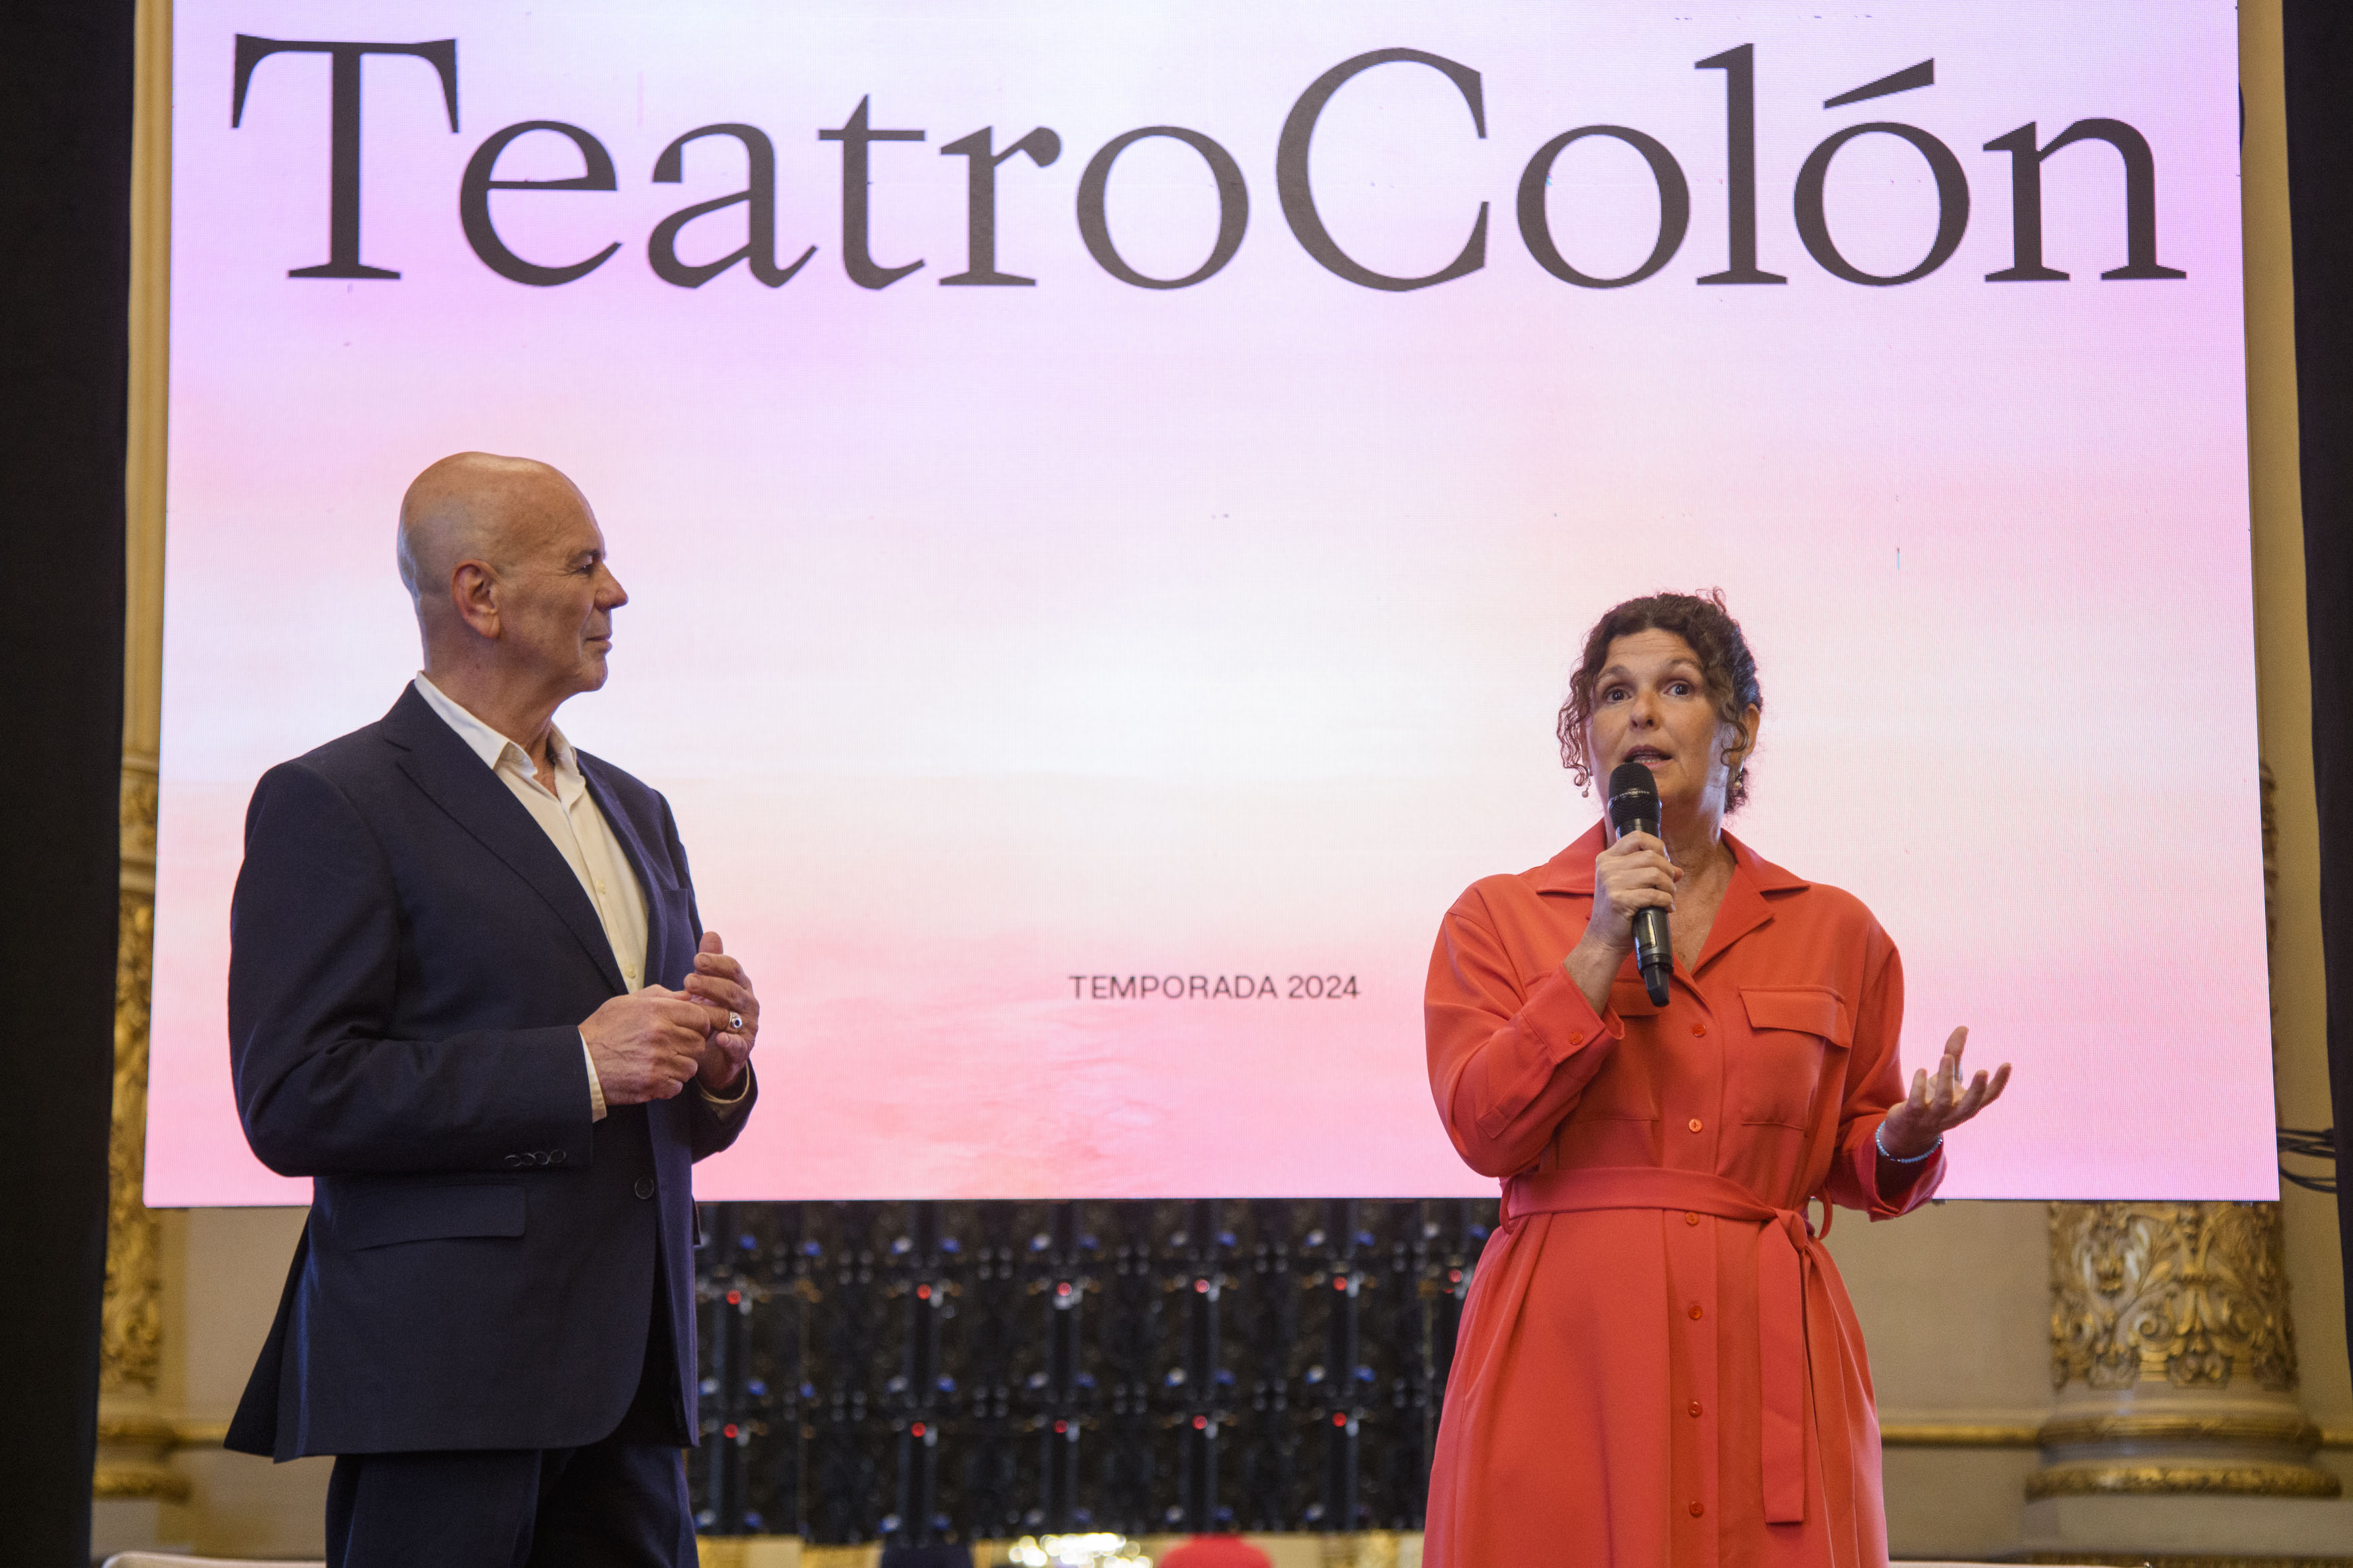 Teatro Colón temporada 2024